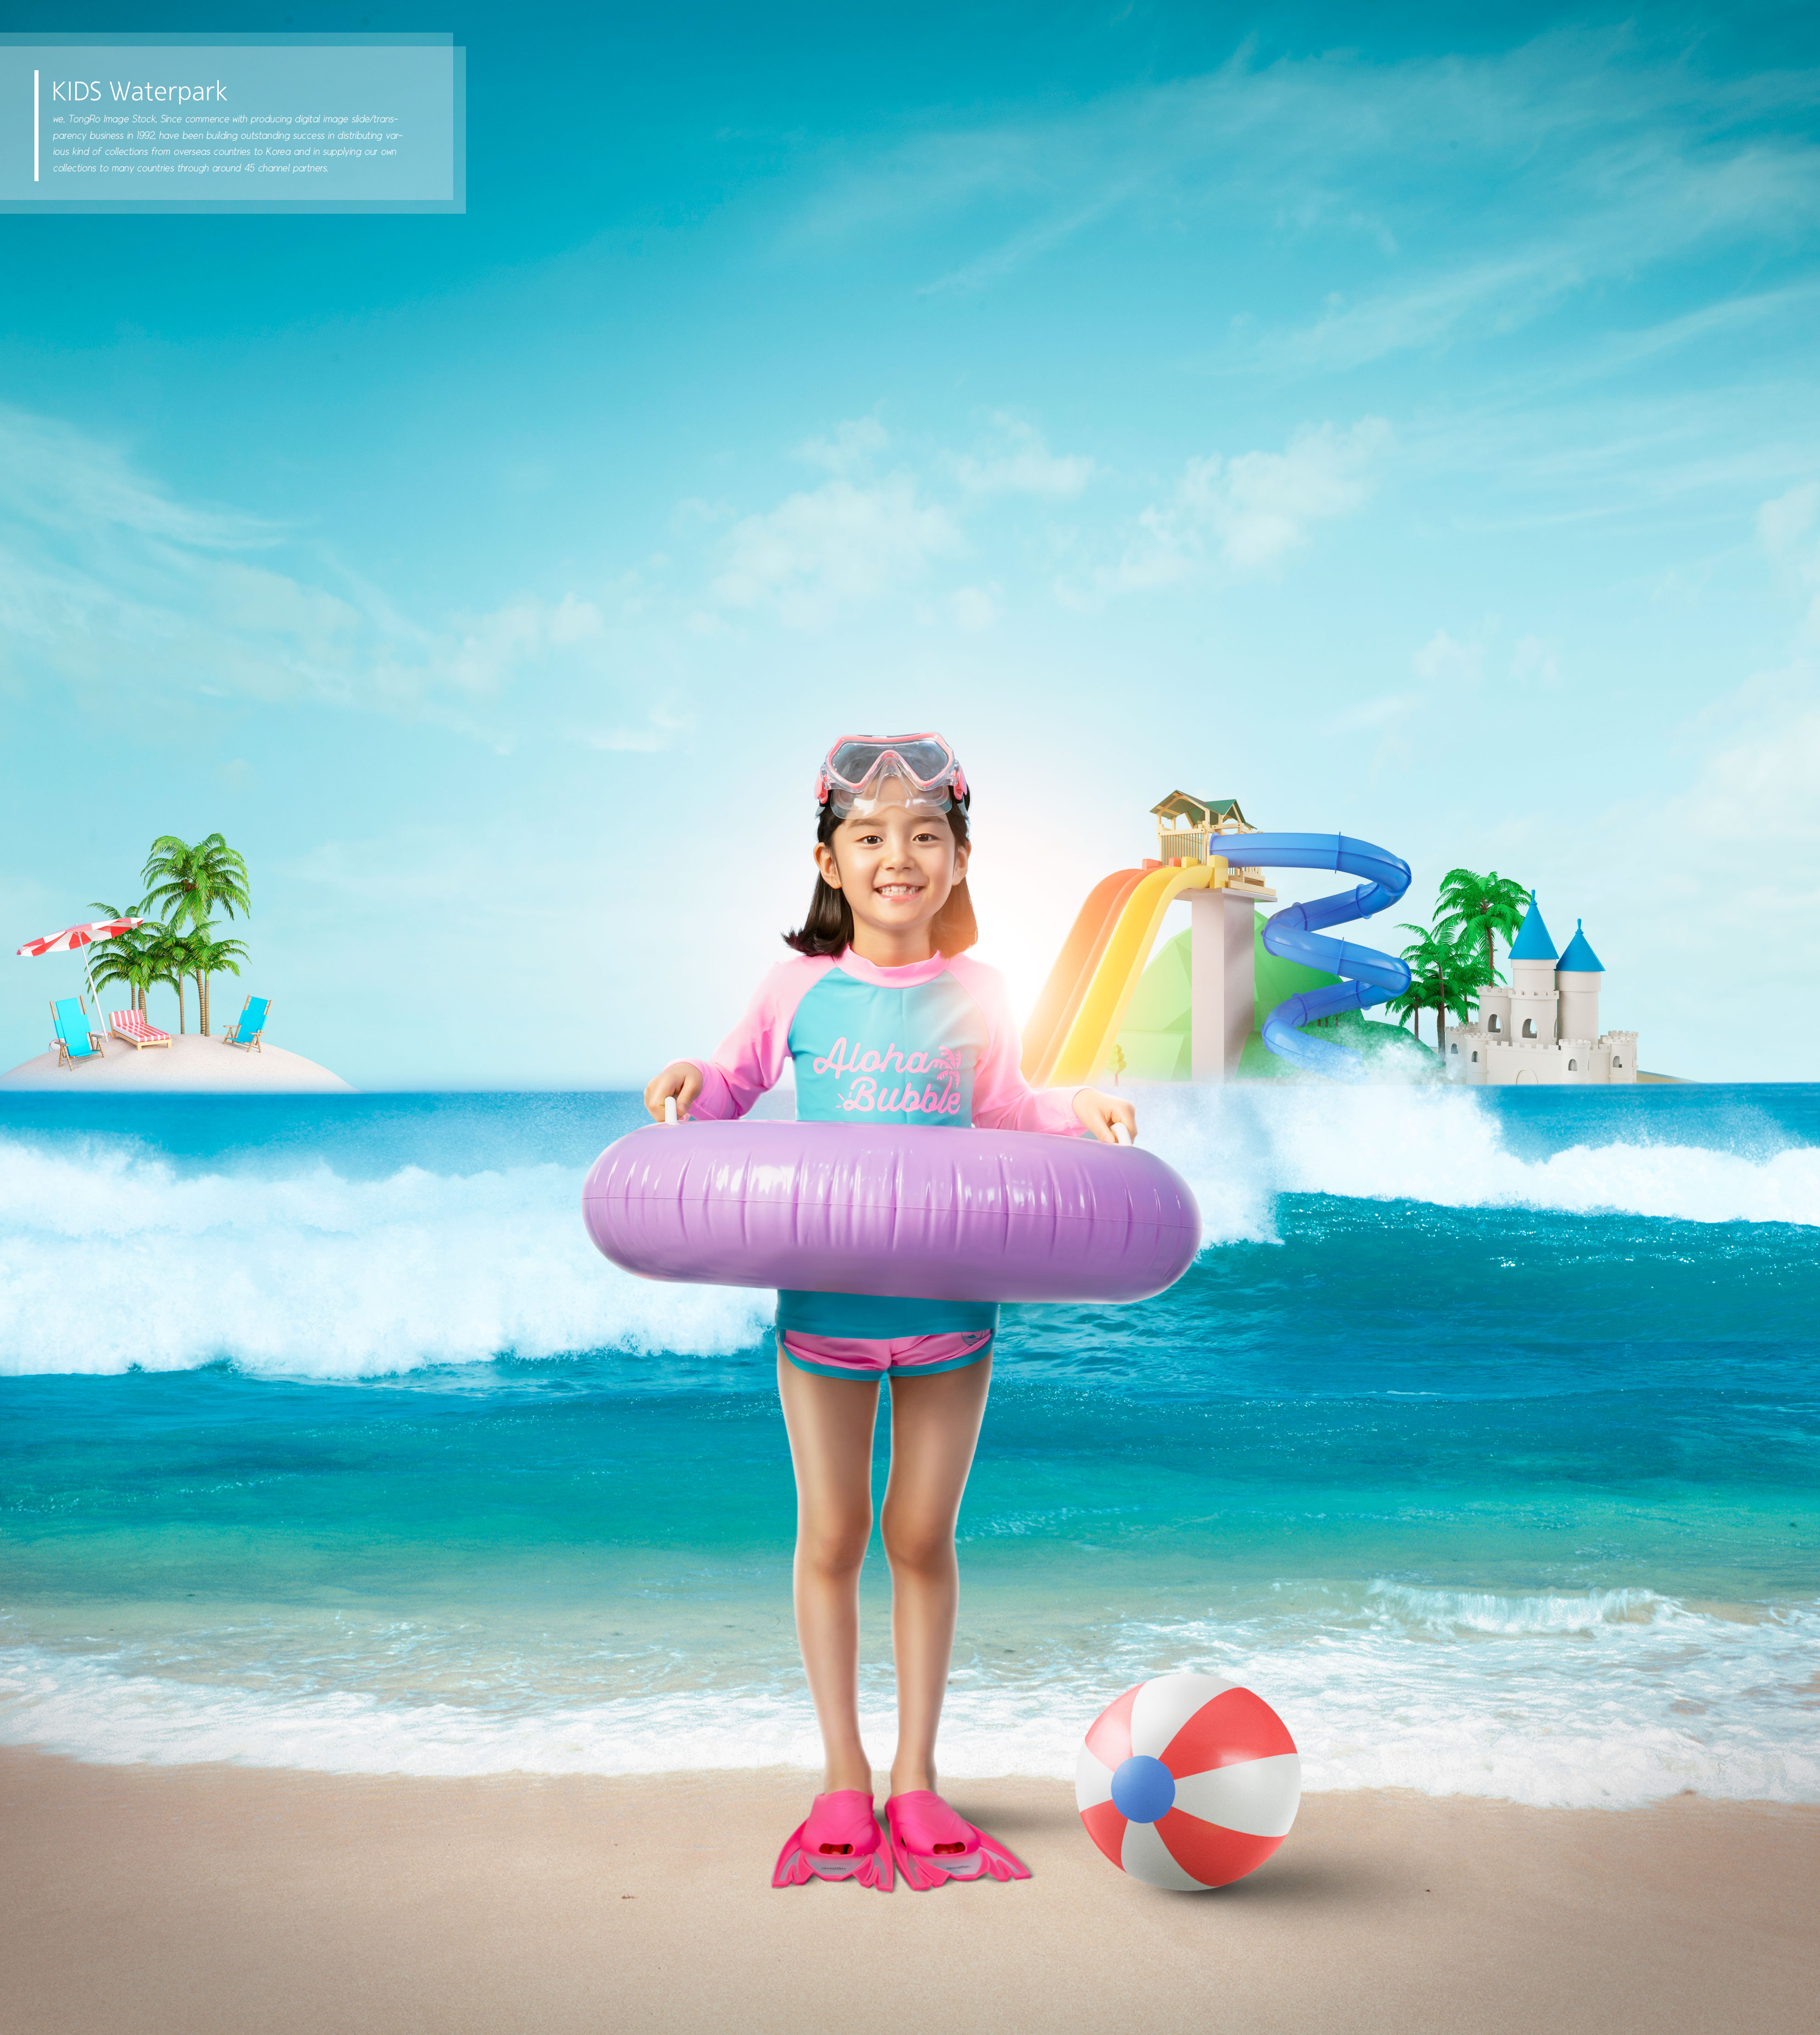 夏季暑假儿童水上乐园活动广告海报设计套装插图(2)